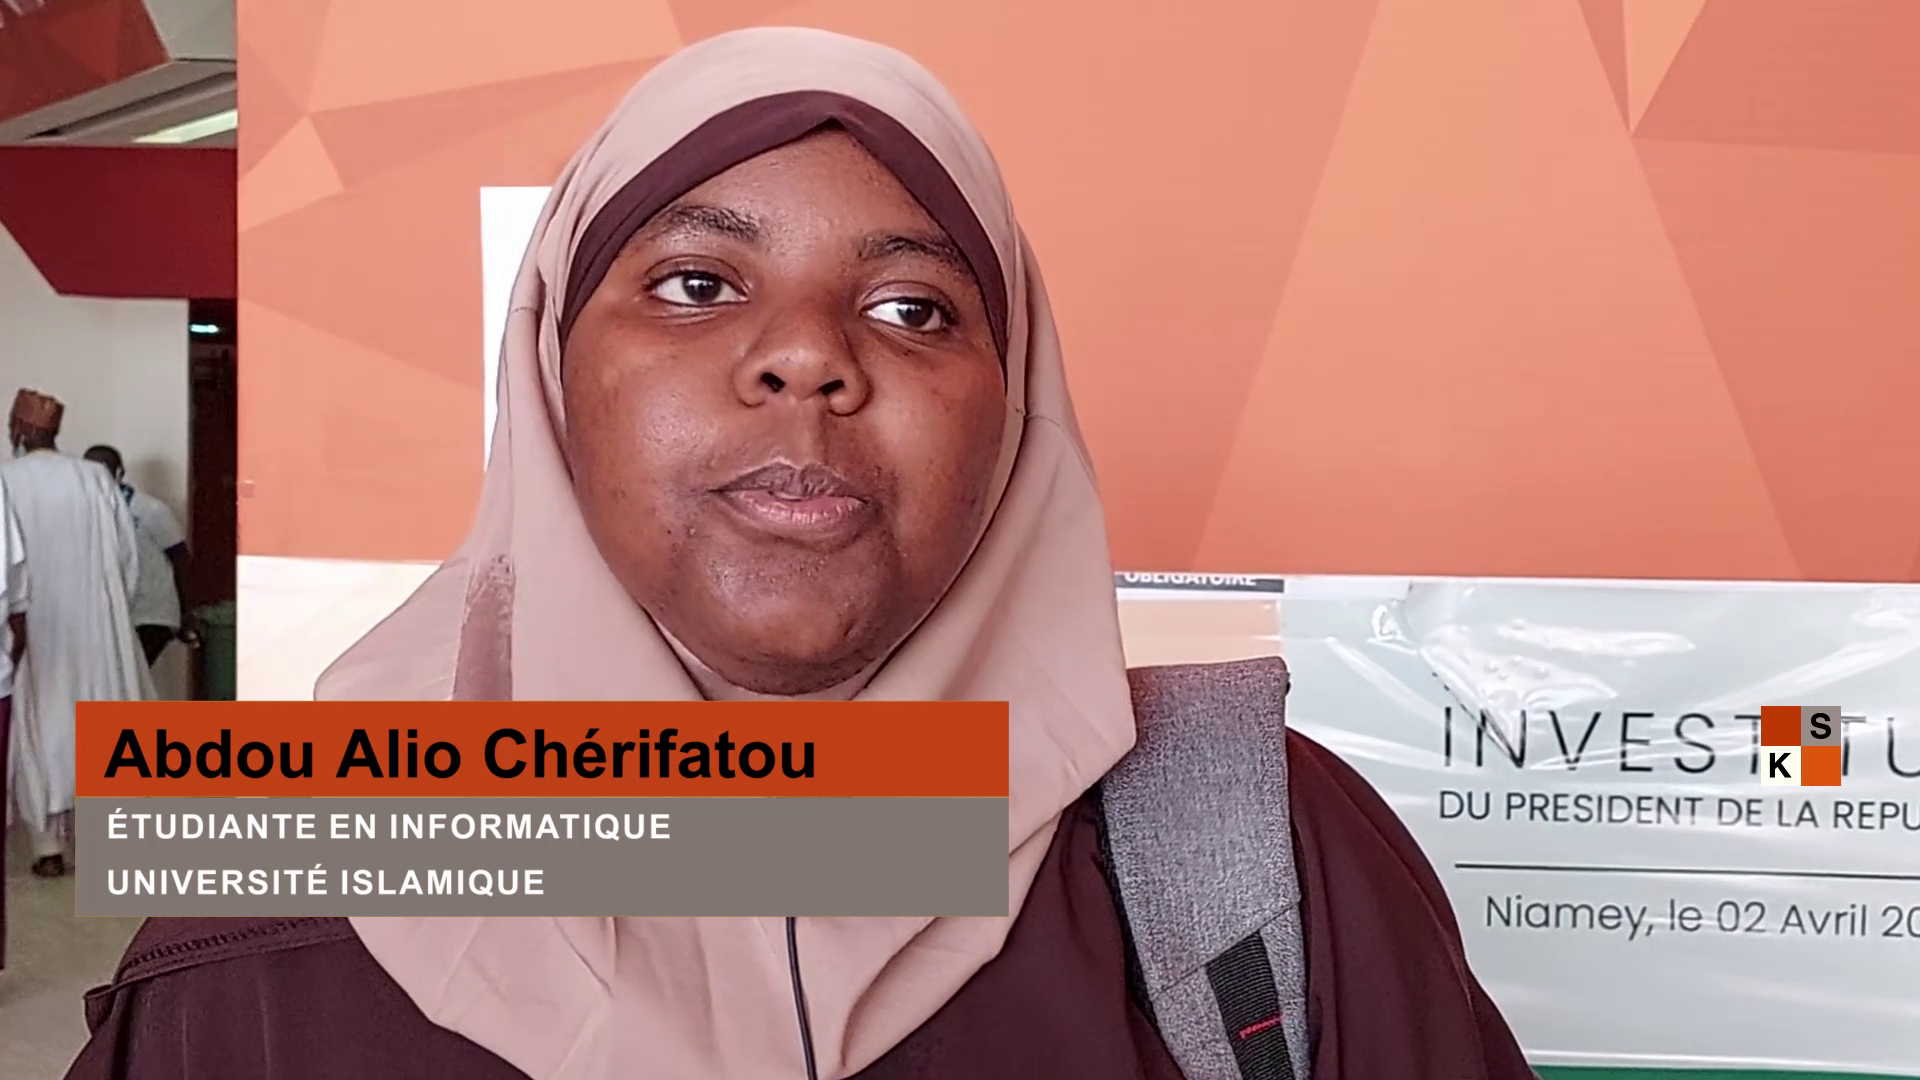 Portrait de la jeune Charifatou Alio Abdou, une accro des nouvelles technologies.